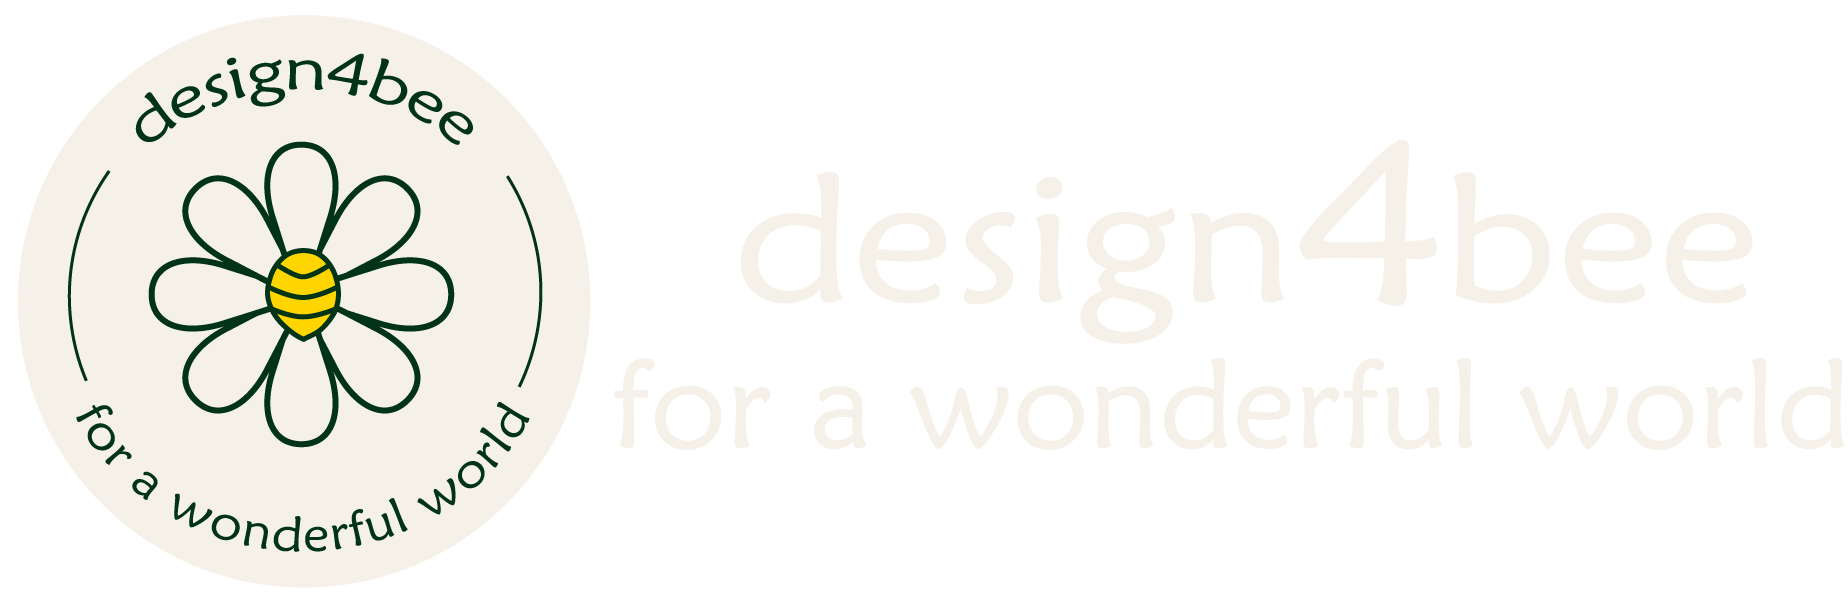 design4bee